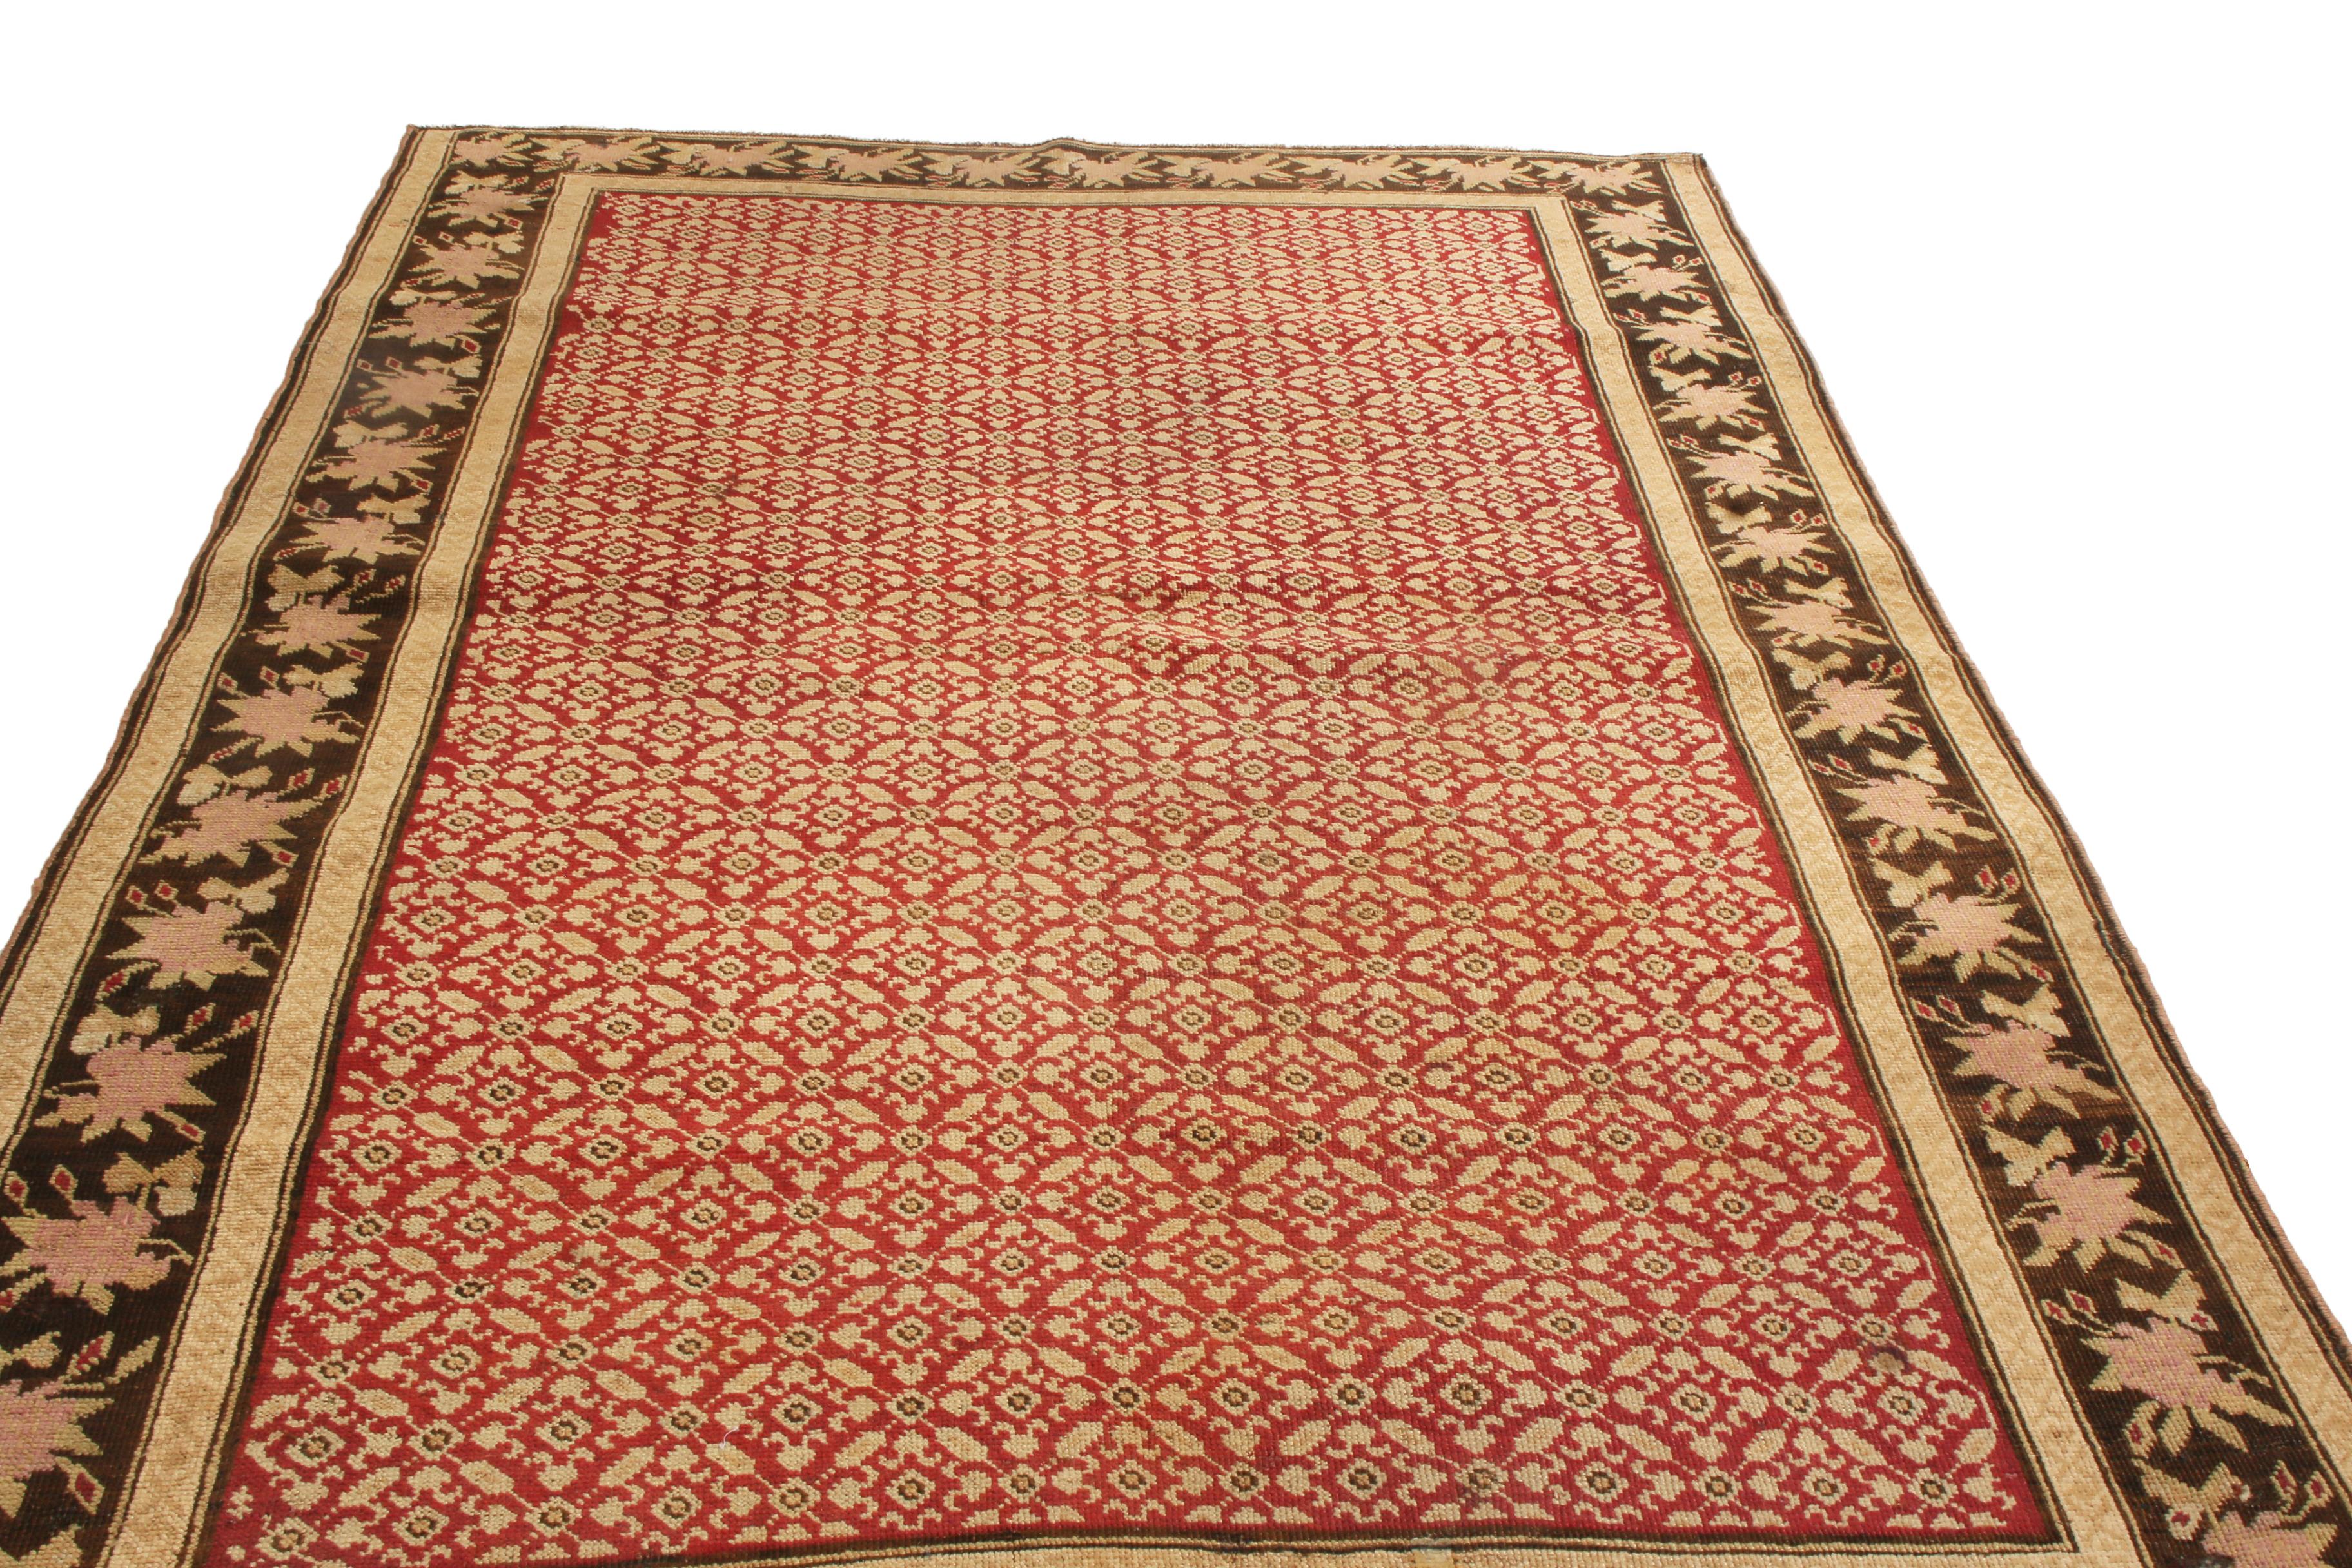 Dieser antike traditionelle Karabagh-Wollteppich stammt aus Russland aus dem Jahr 1900 und zeigt eine konzentrierte, kunstvolle Farbkombination mit einer weniger bekannten Variante des Herati-Musters. Das sich wiederholende All-Over-Feldmuster, das